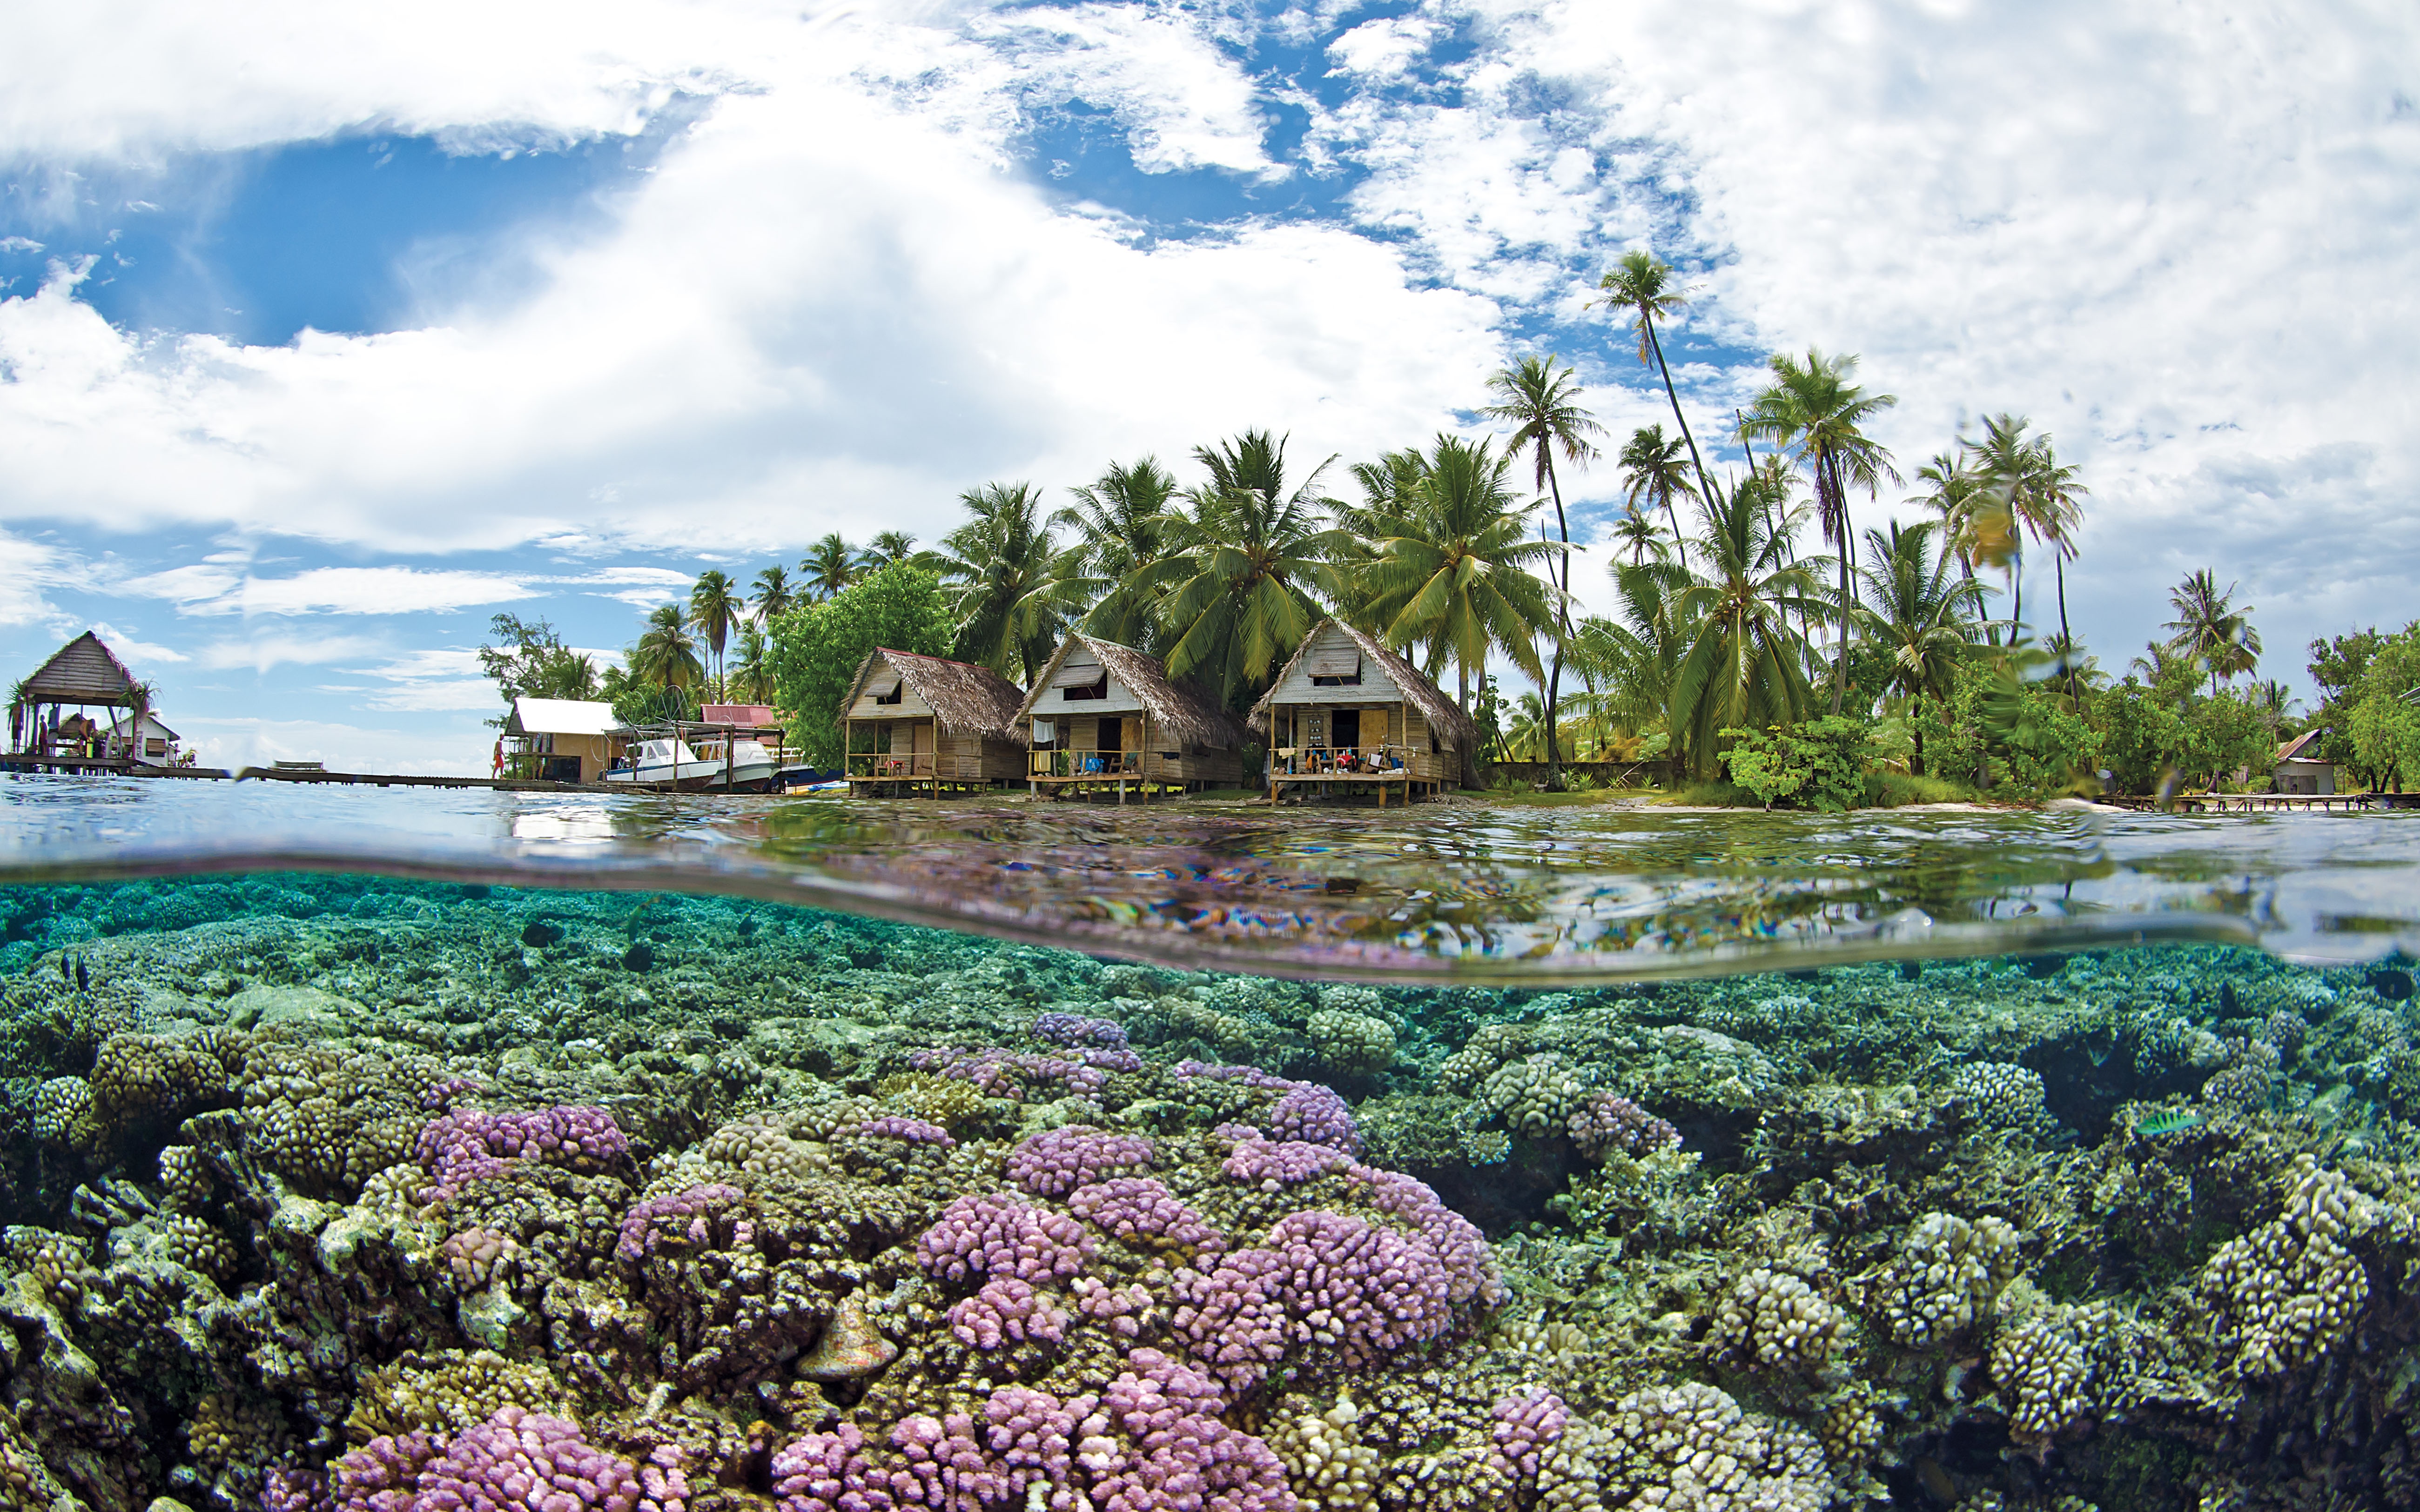 Экзотическая природа. Остров Таити. Французская Полинезия (Polynesie francaise) и остров Таити (Tahiti). Бора Бора на Таити. Риф Раройя Полинезия.